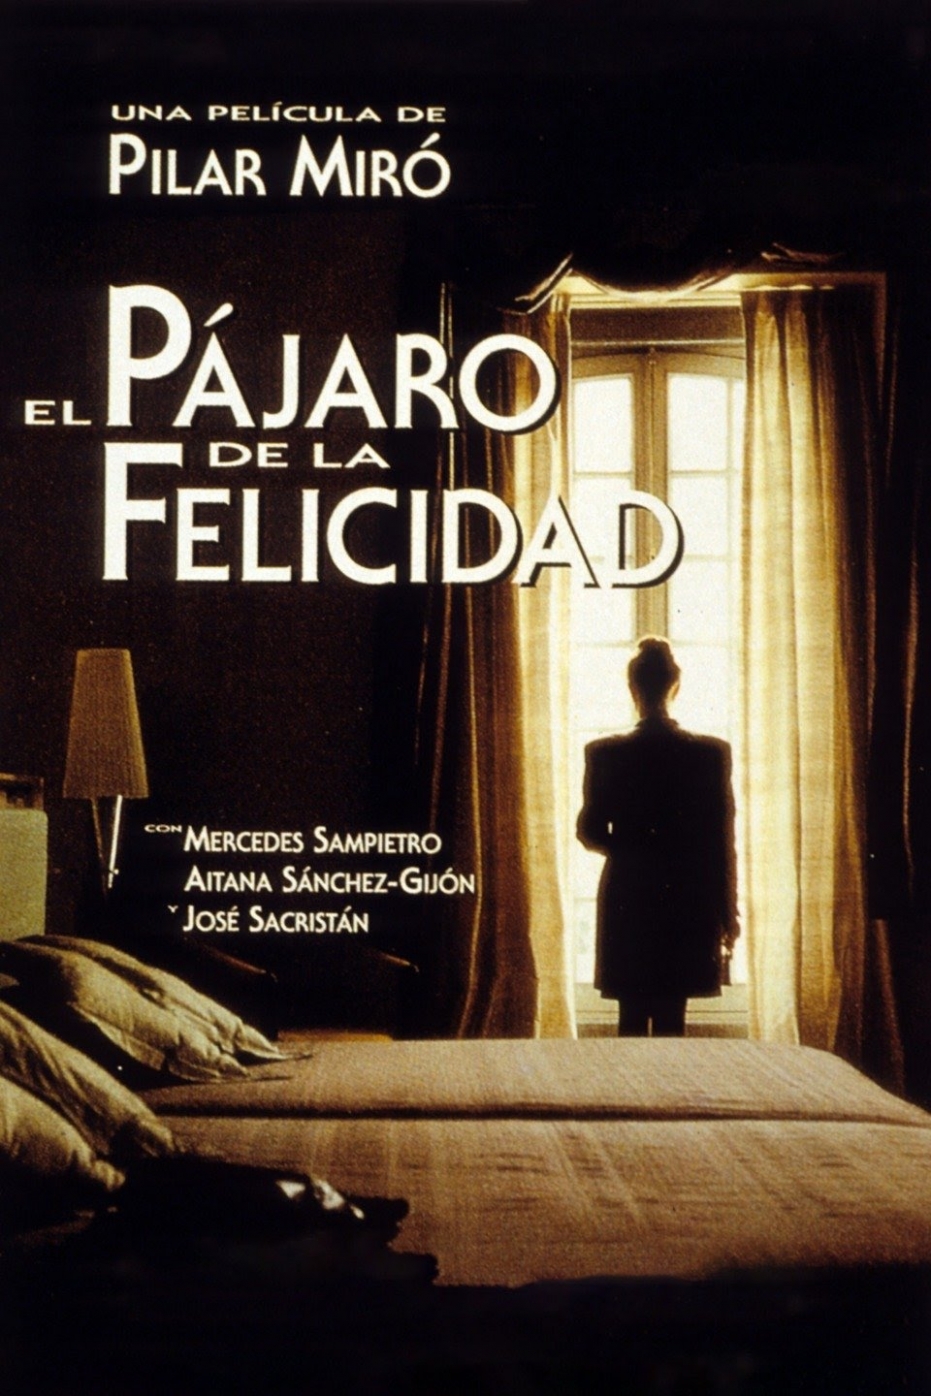 Homenaje a la figura y obra de Pilar Miró: proyección de El pájaro de la felicidad en colaboración con Filmoteca Española. Coloquio posterior